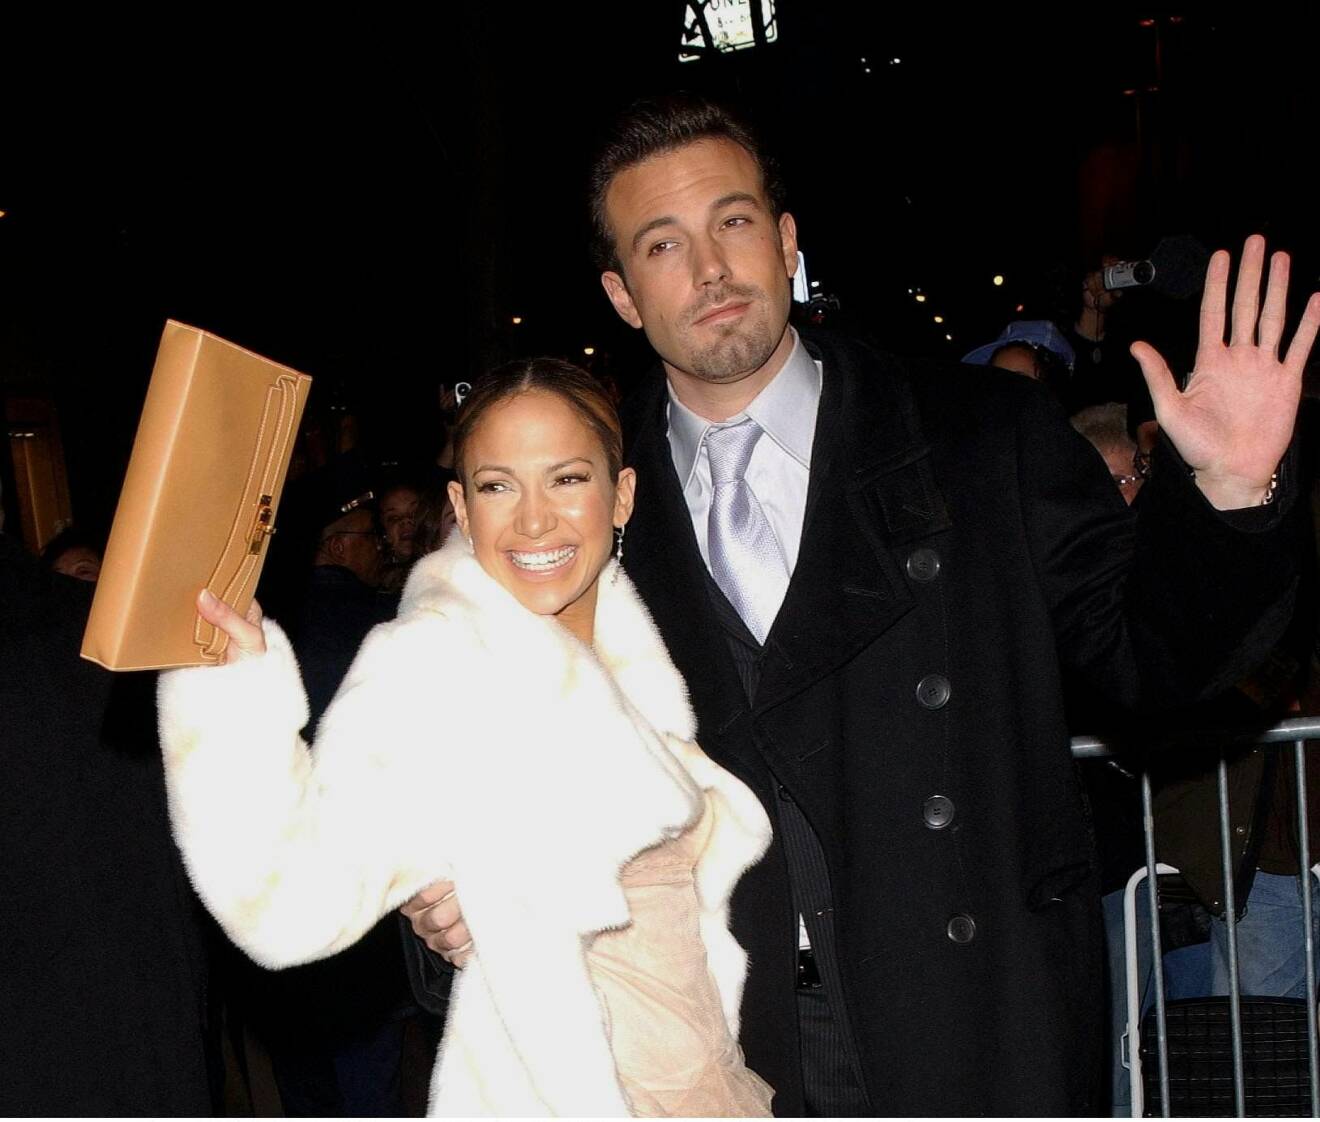 NEW YORK Jennifer Lopez and Ben Affleck at "Maid in Manhattan" premier at the Ziegfeld Theatre in Manhattan on 8 December 2002.